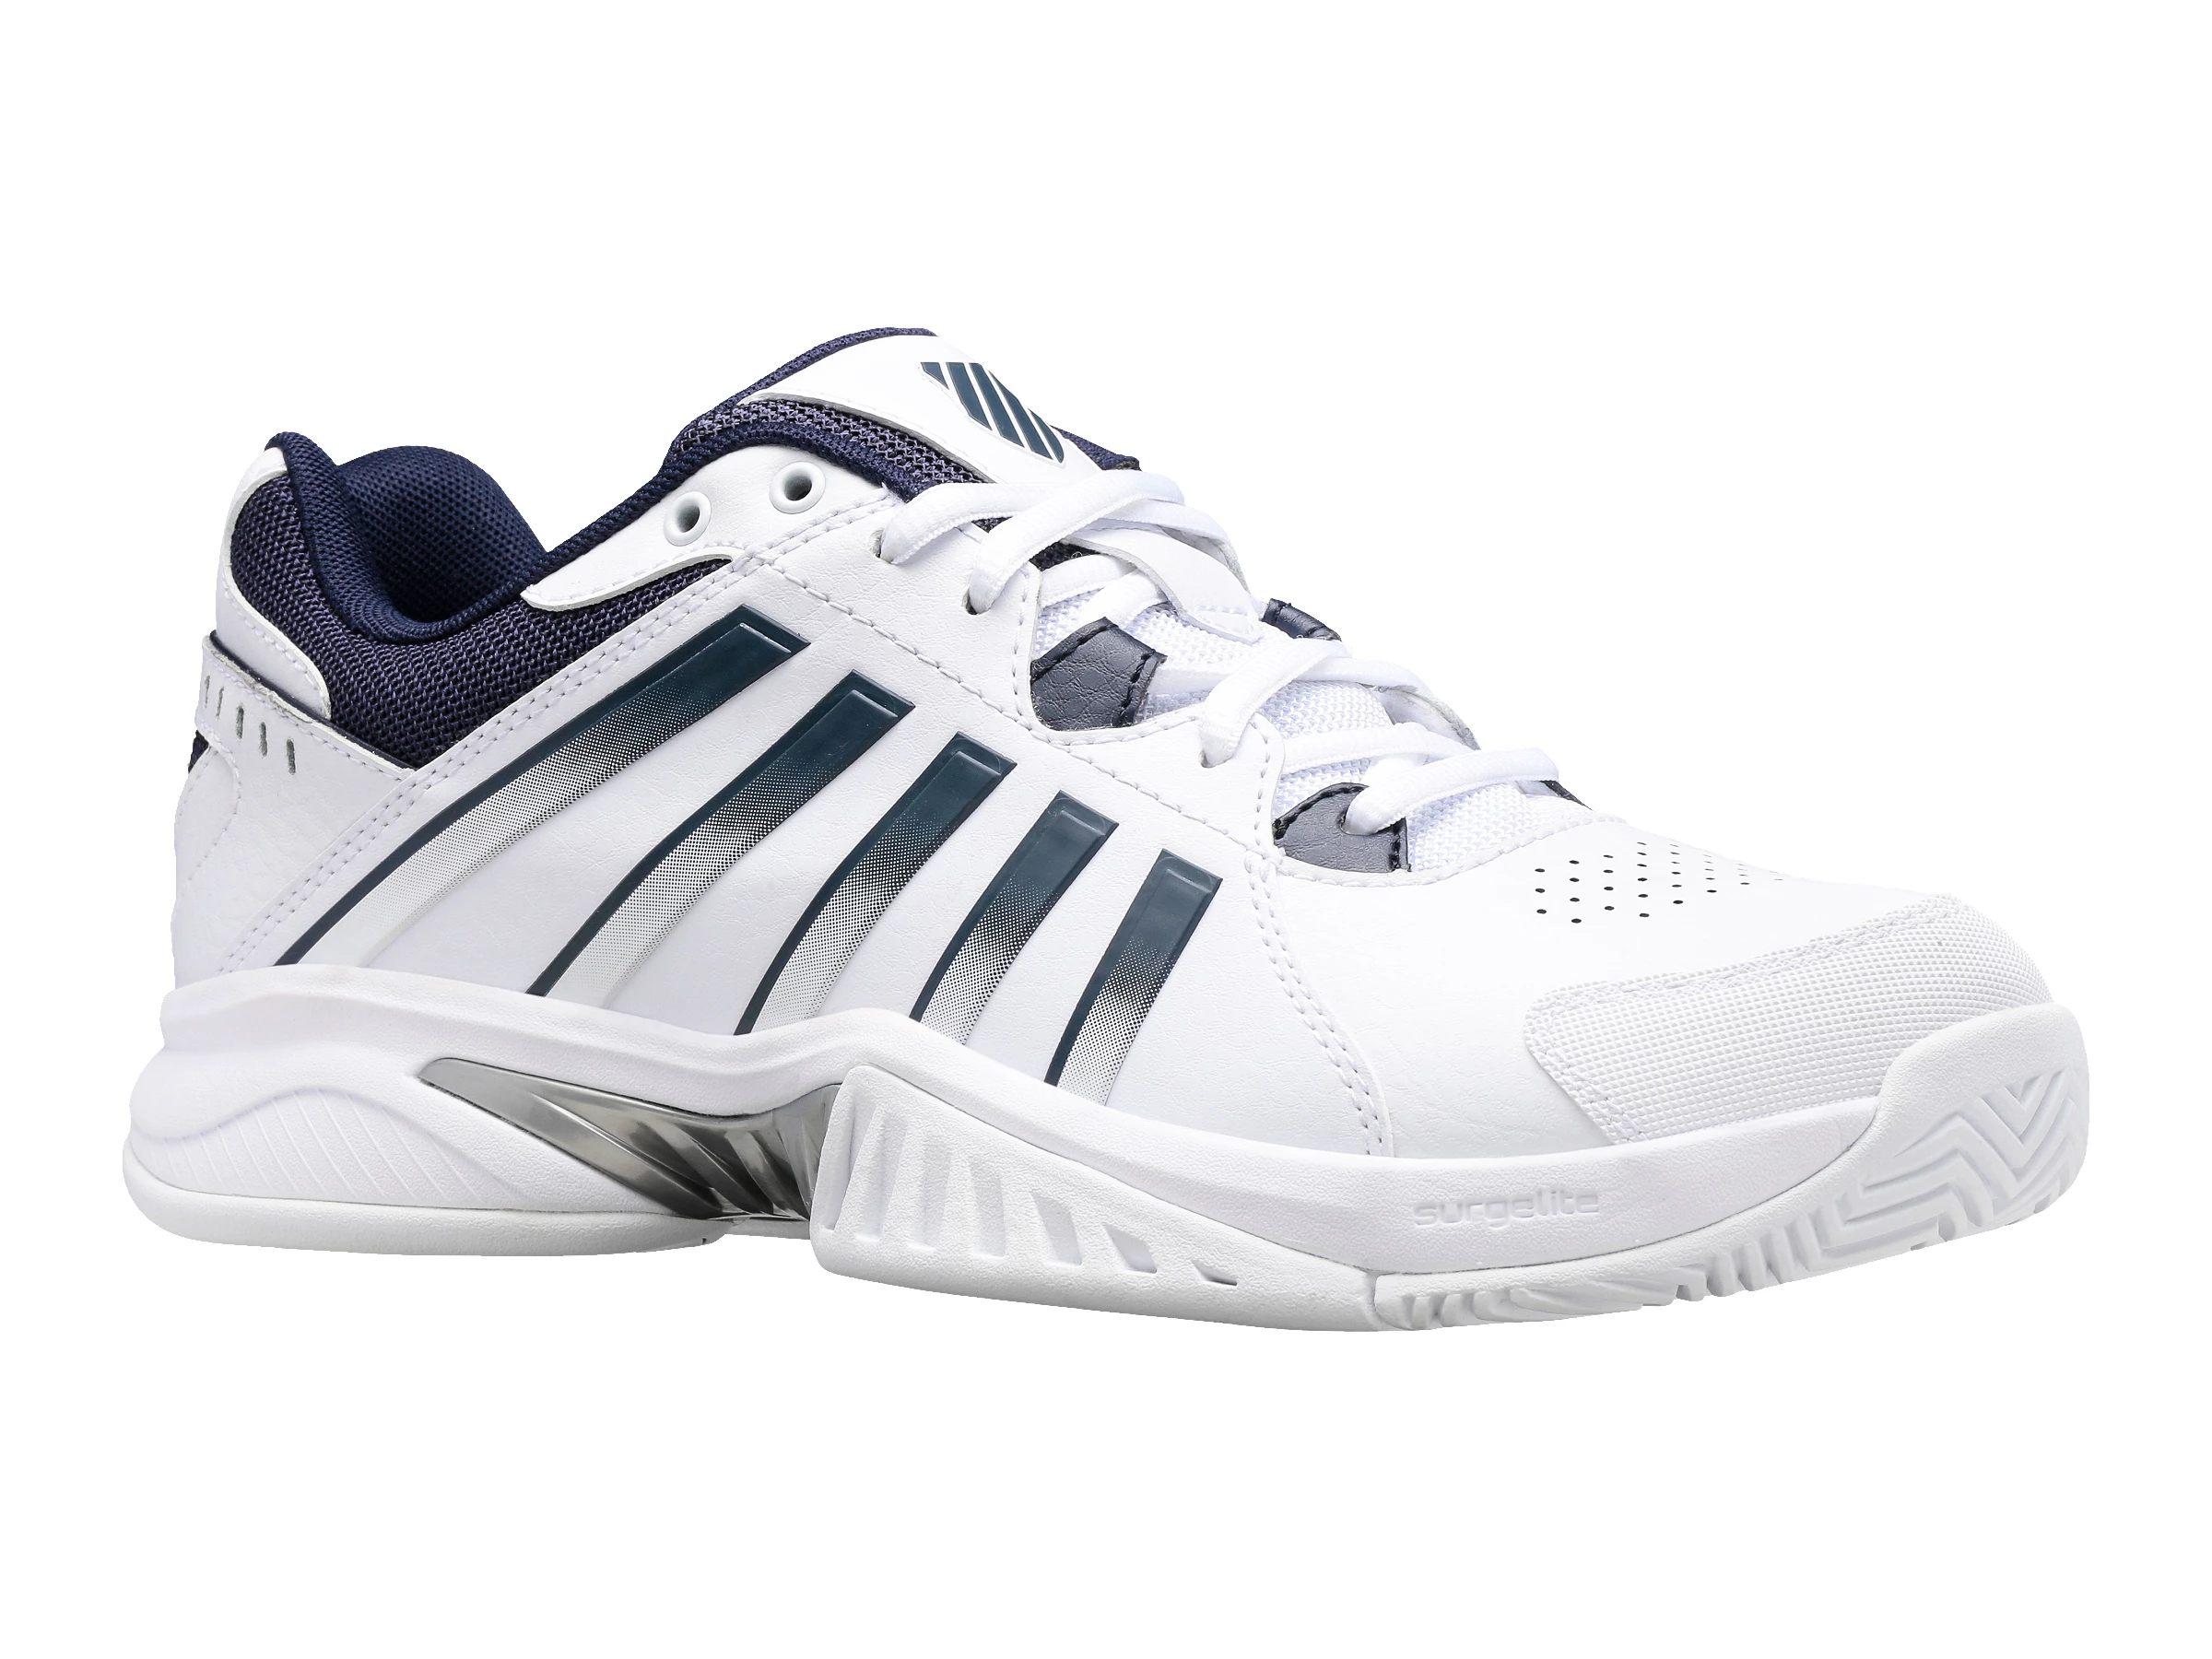 K-Swiss Receiver V White EUR 45 Men's Tennis Shoes